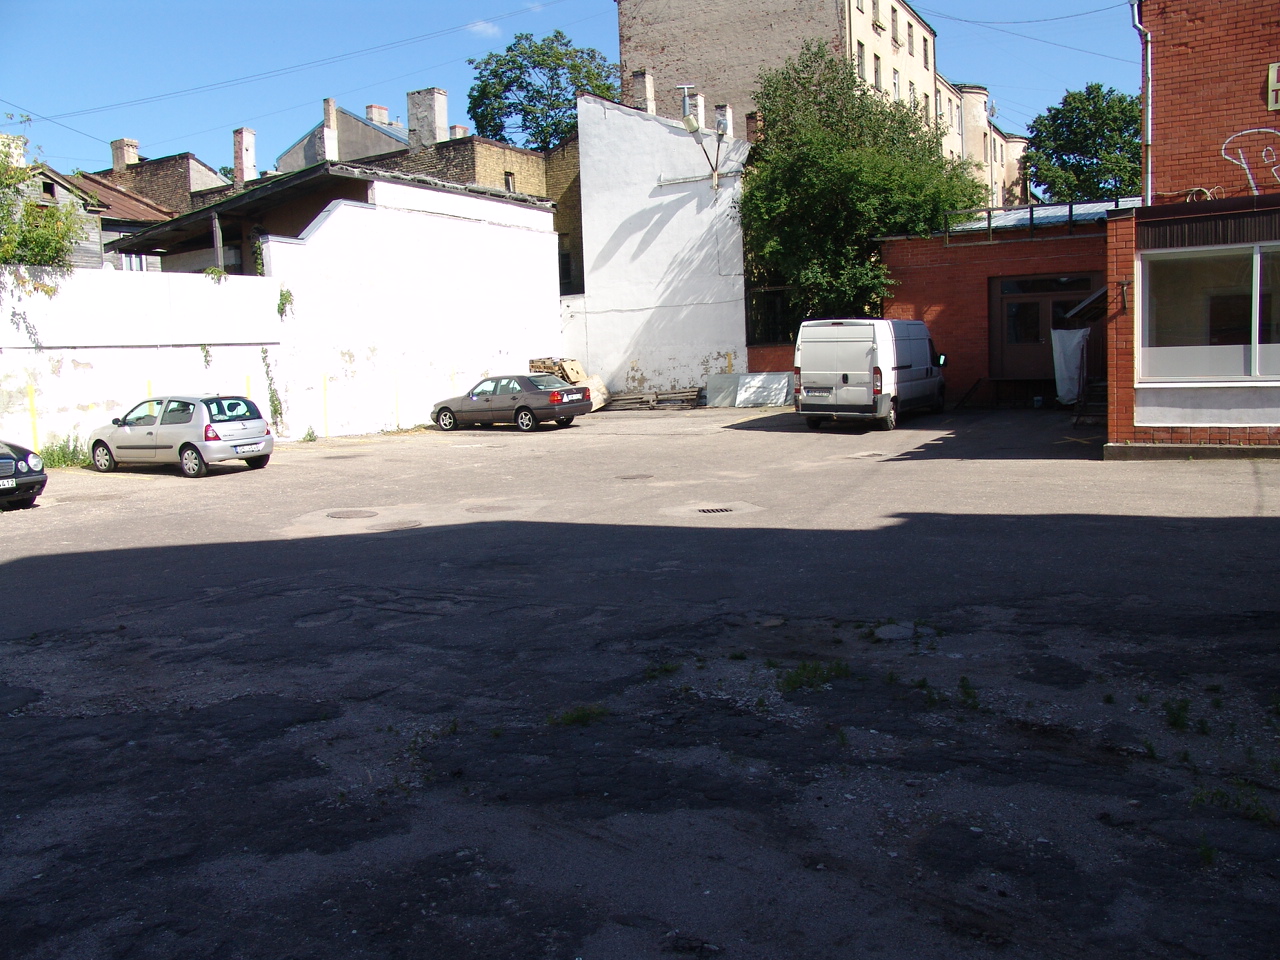 Investment property, Krāsotāju street - Image 1